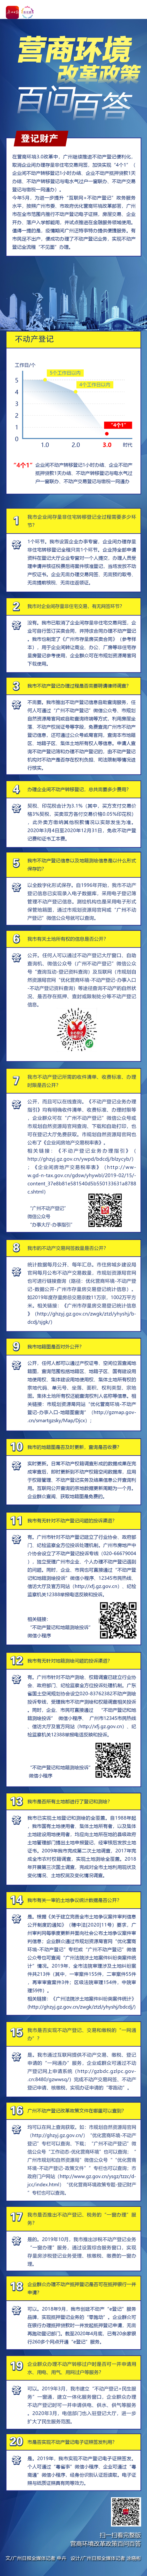 广州营商一图读懂-6登记财产-广州日报.jpg